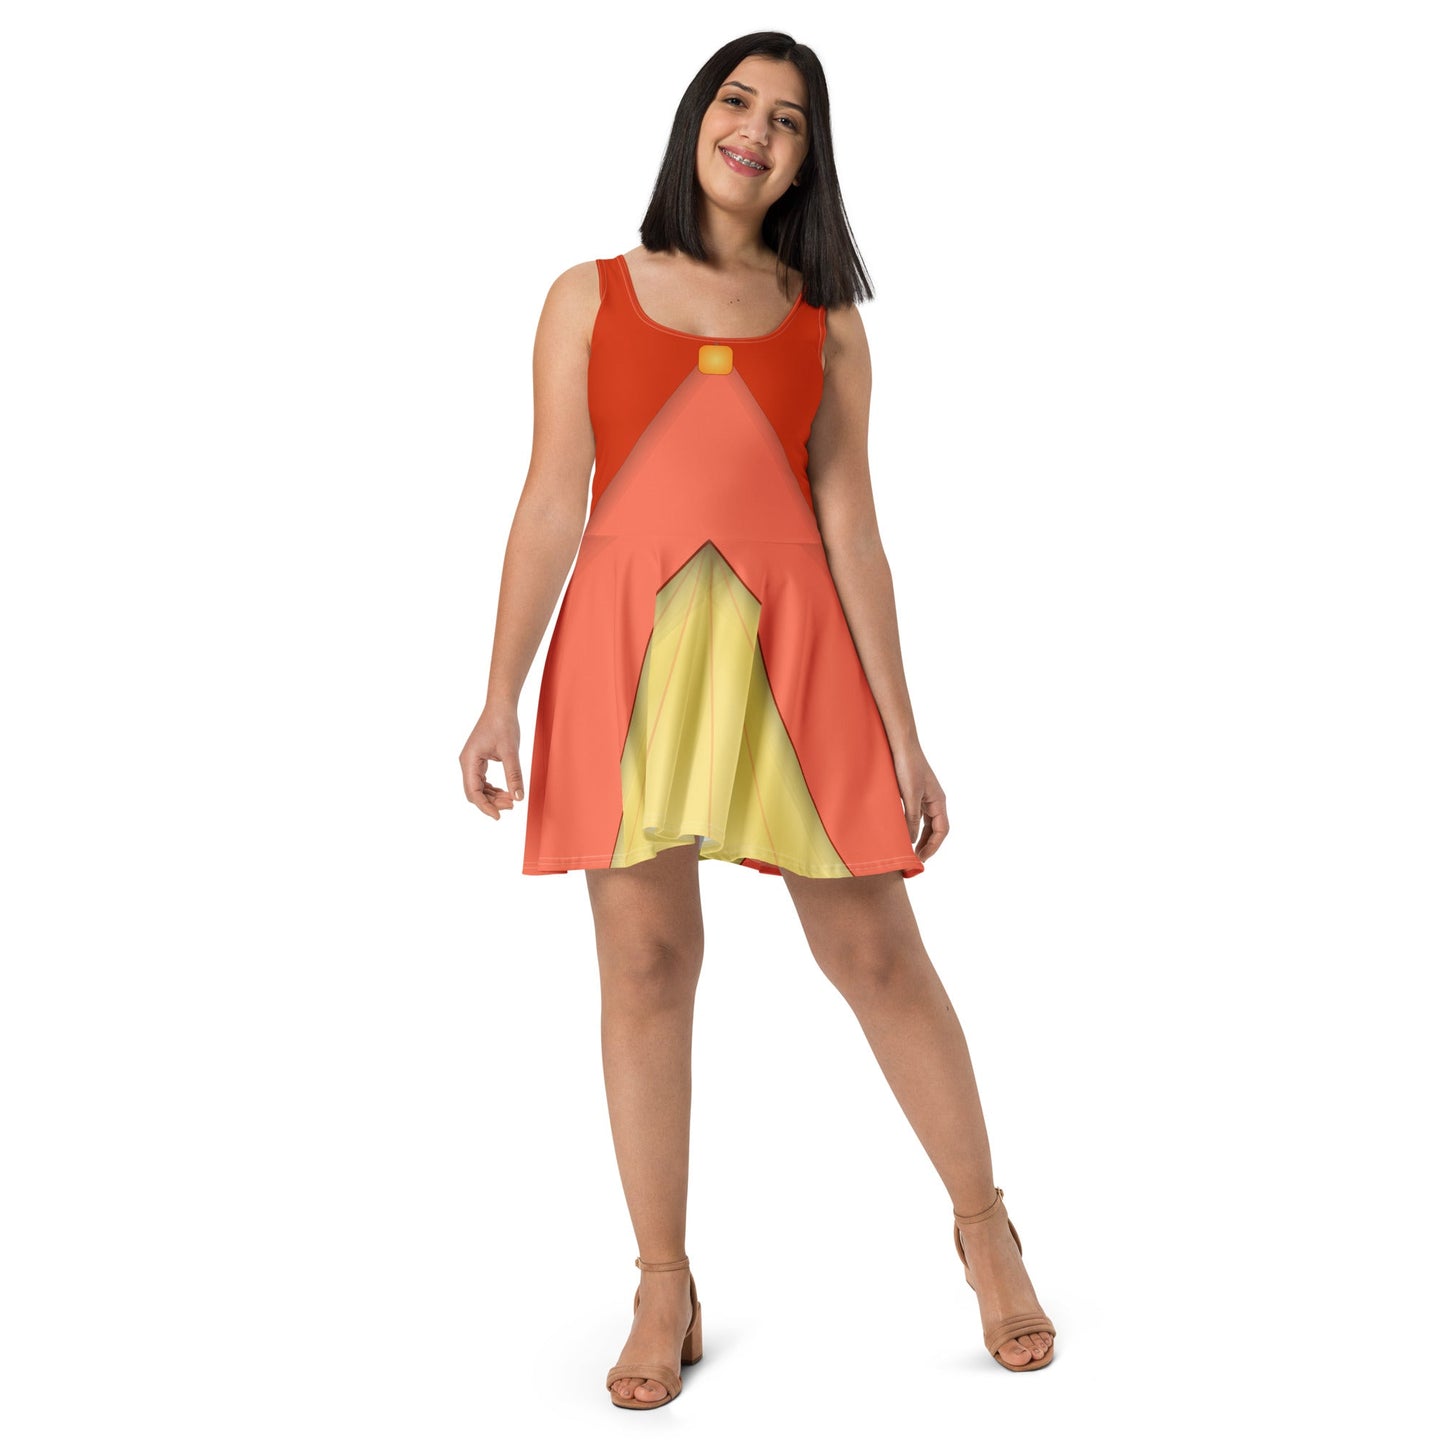 The Flora Skater Dress adult disneyadult dress upSkater SkirtWrong Lever Clothing